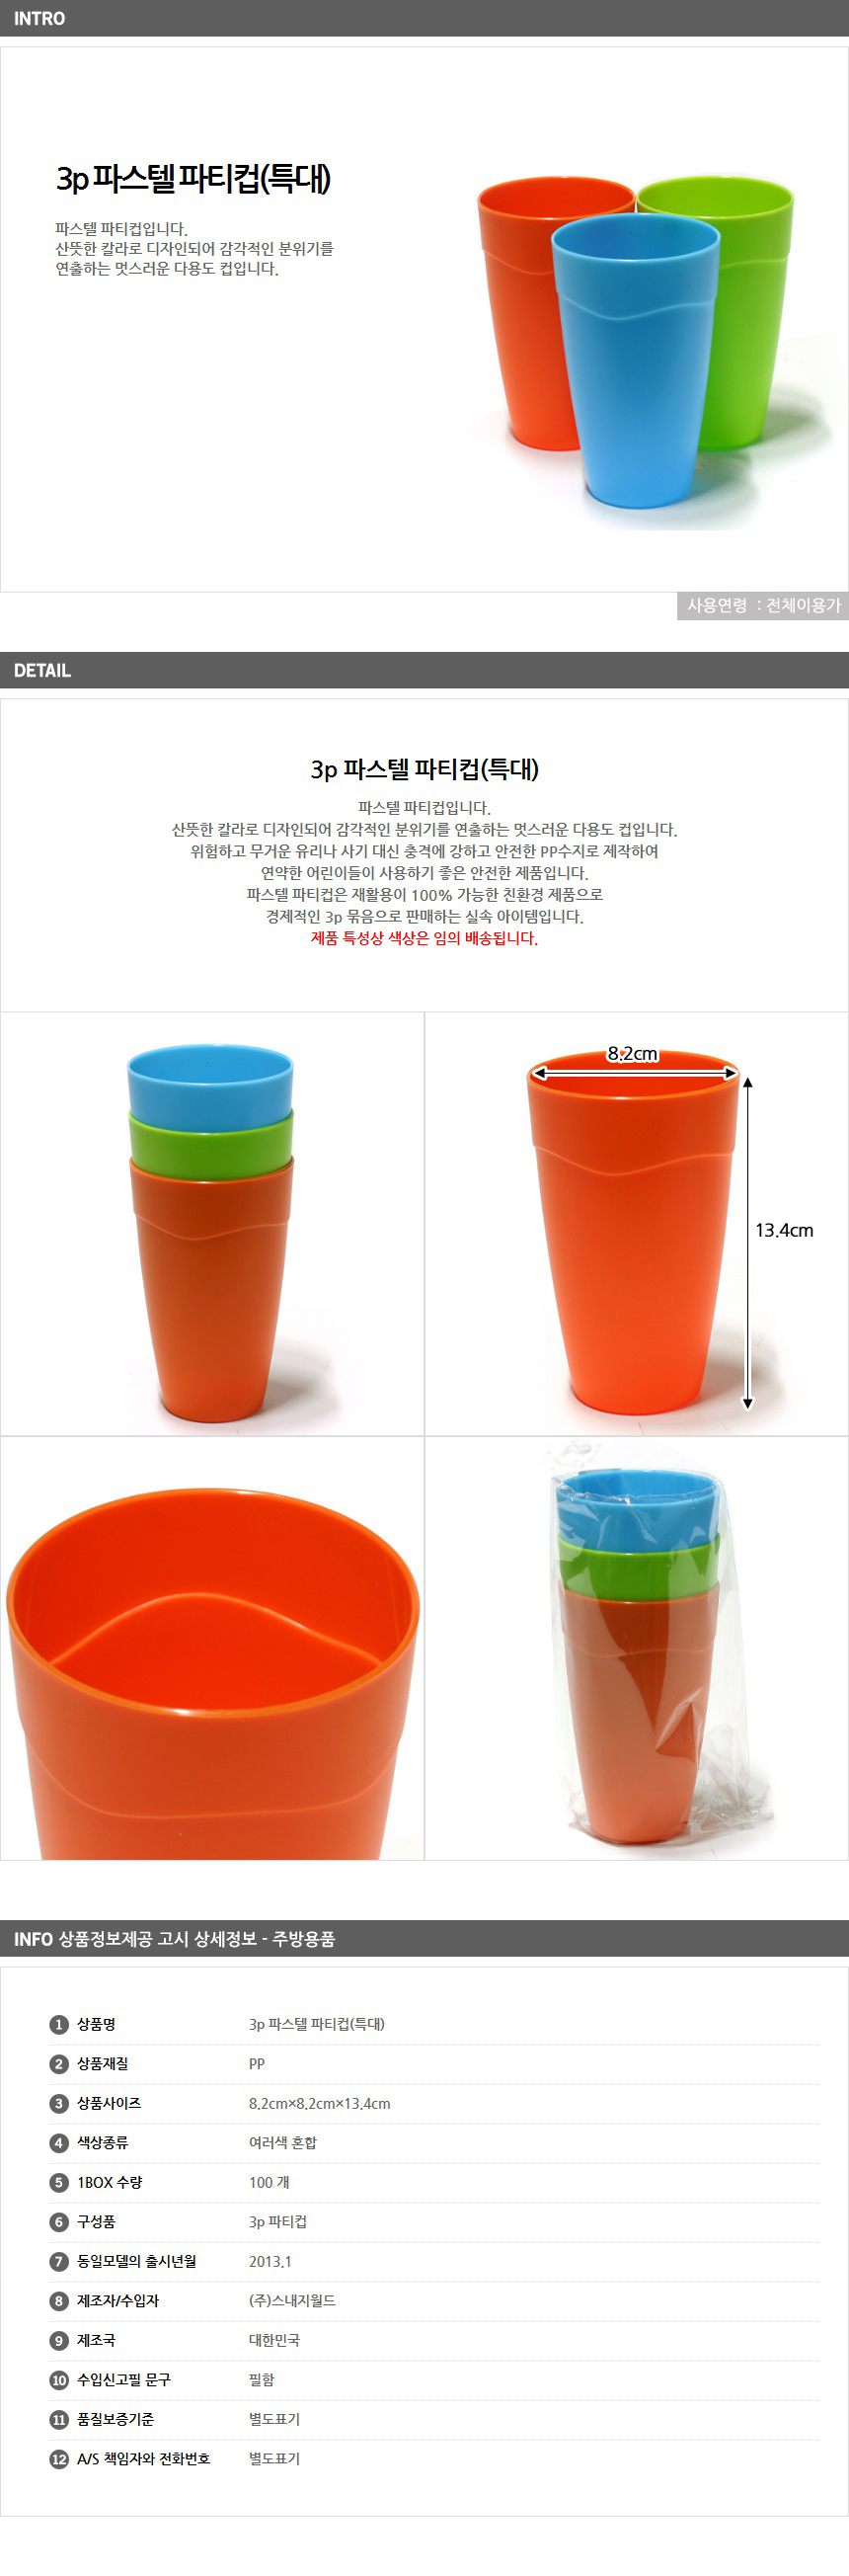 물컵 특대형 3p / 어린이집 홍보 인쇄 양치컵